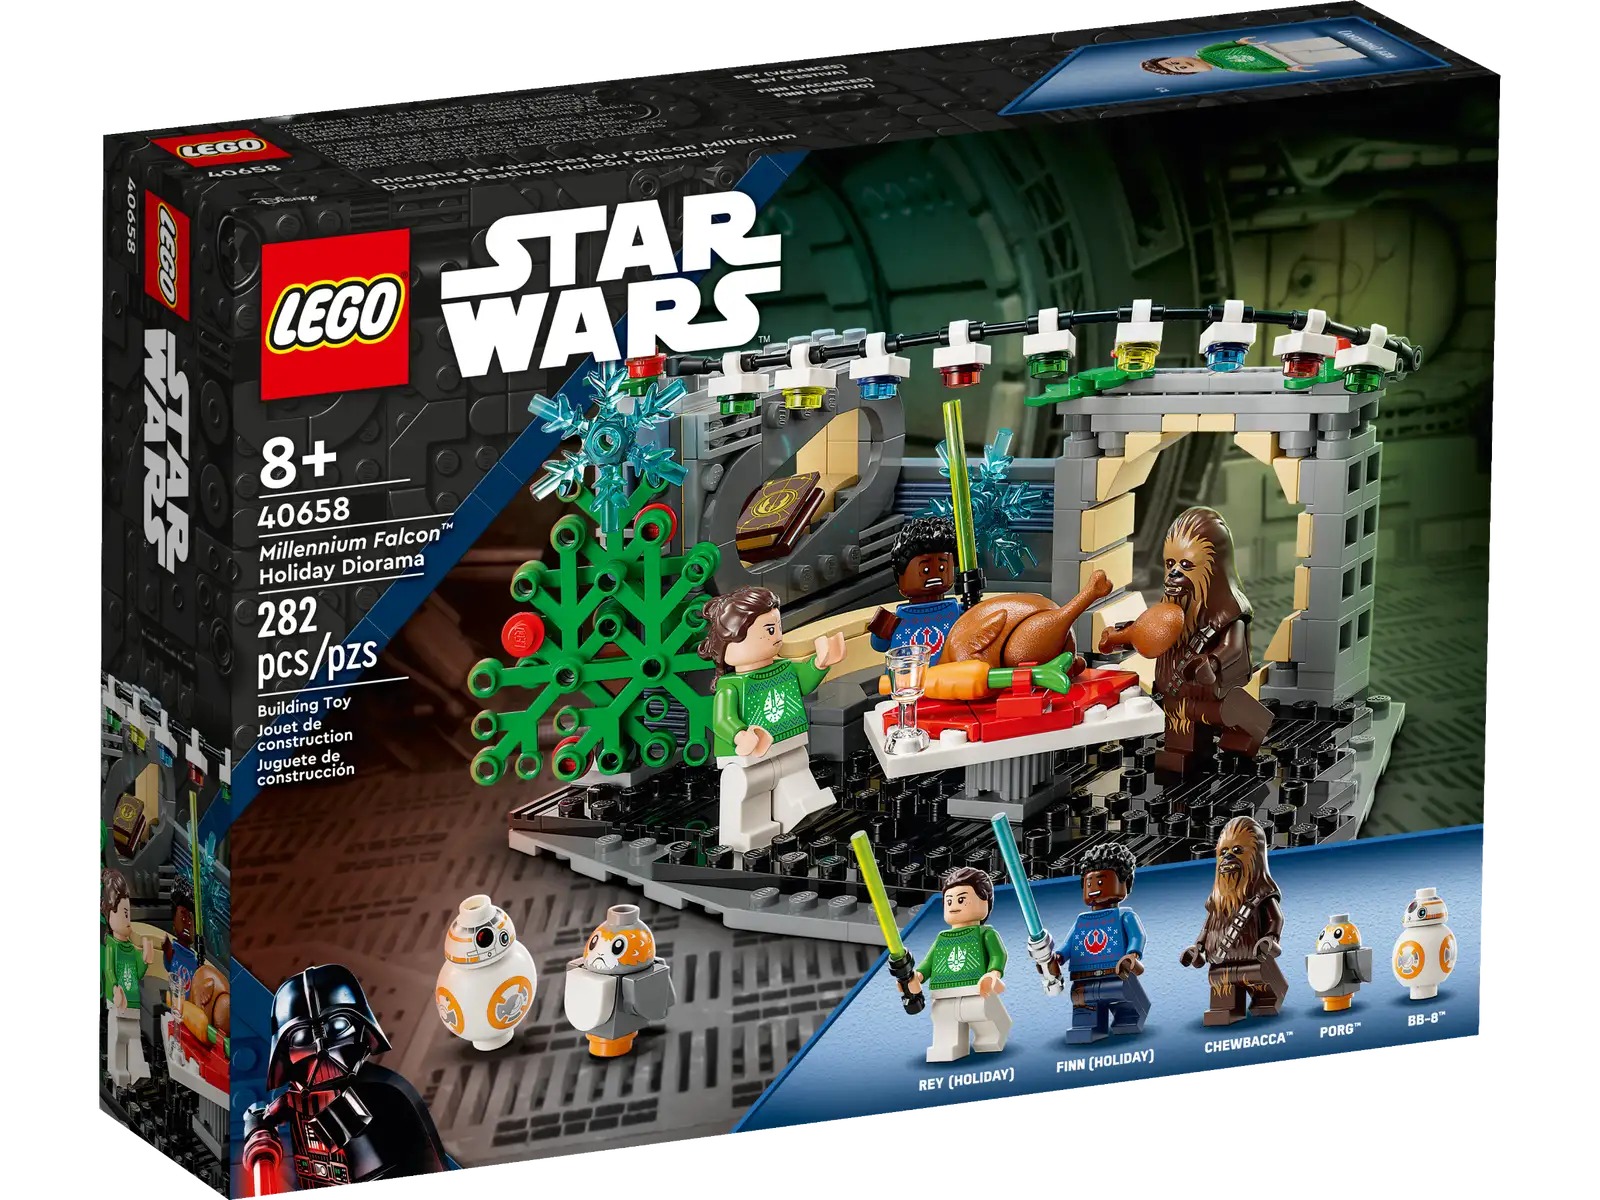 LEGO Star Wars Millennium Falcon Set 7965 - US